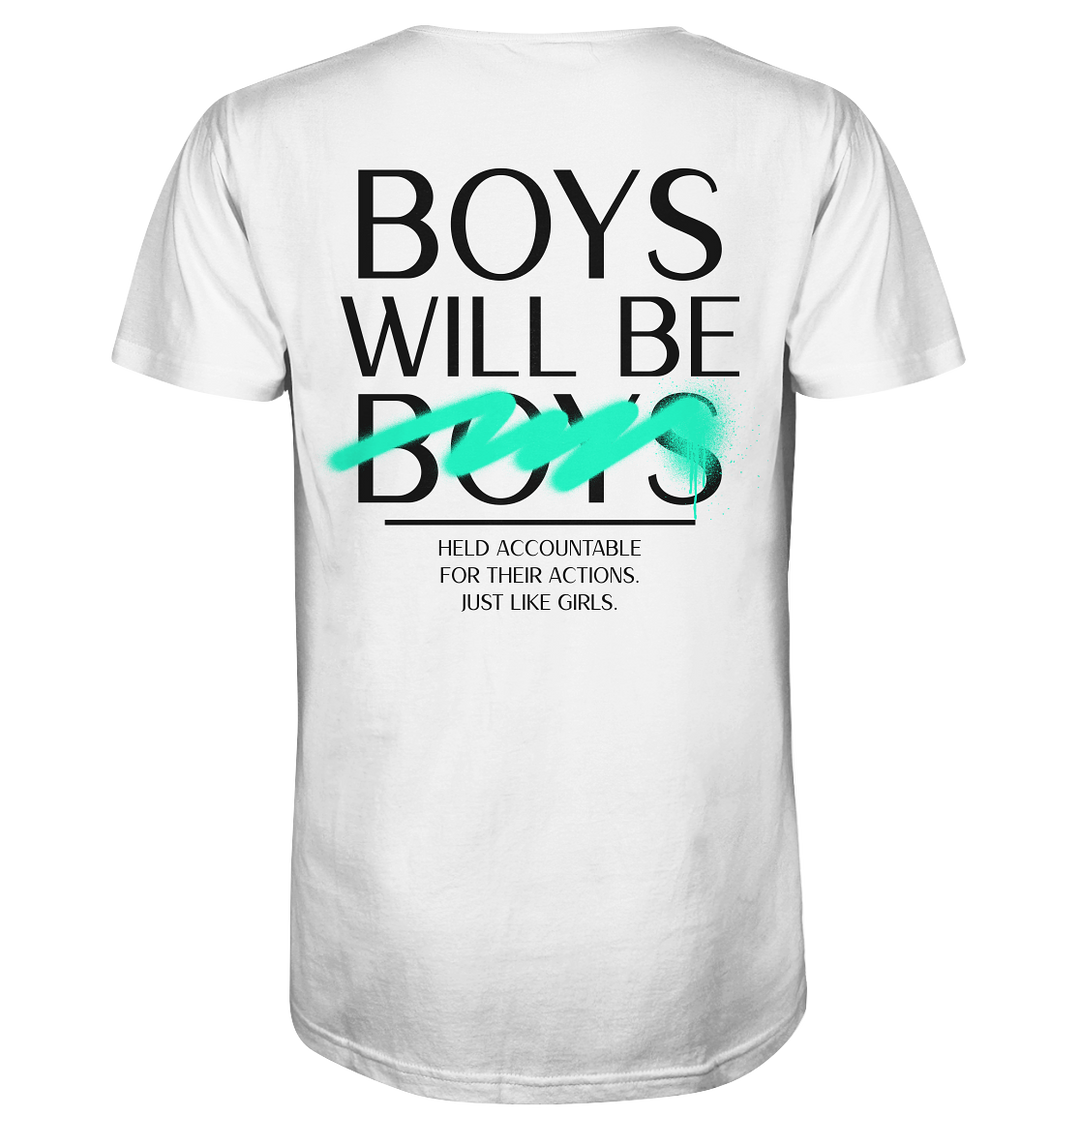 Boys Will Be Boys Herren - Organic Shirt Herren Shirt Organic Shirt True Statement